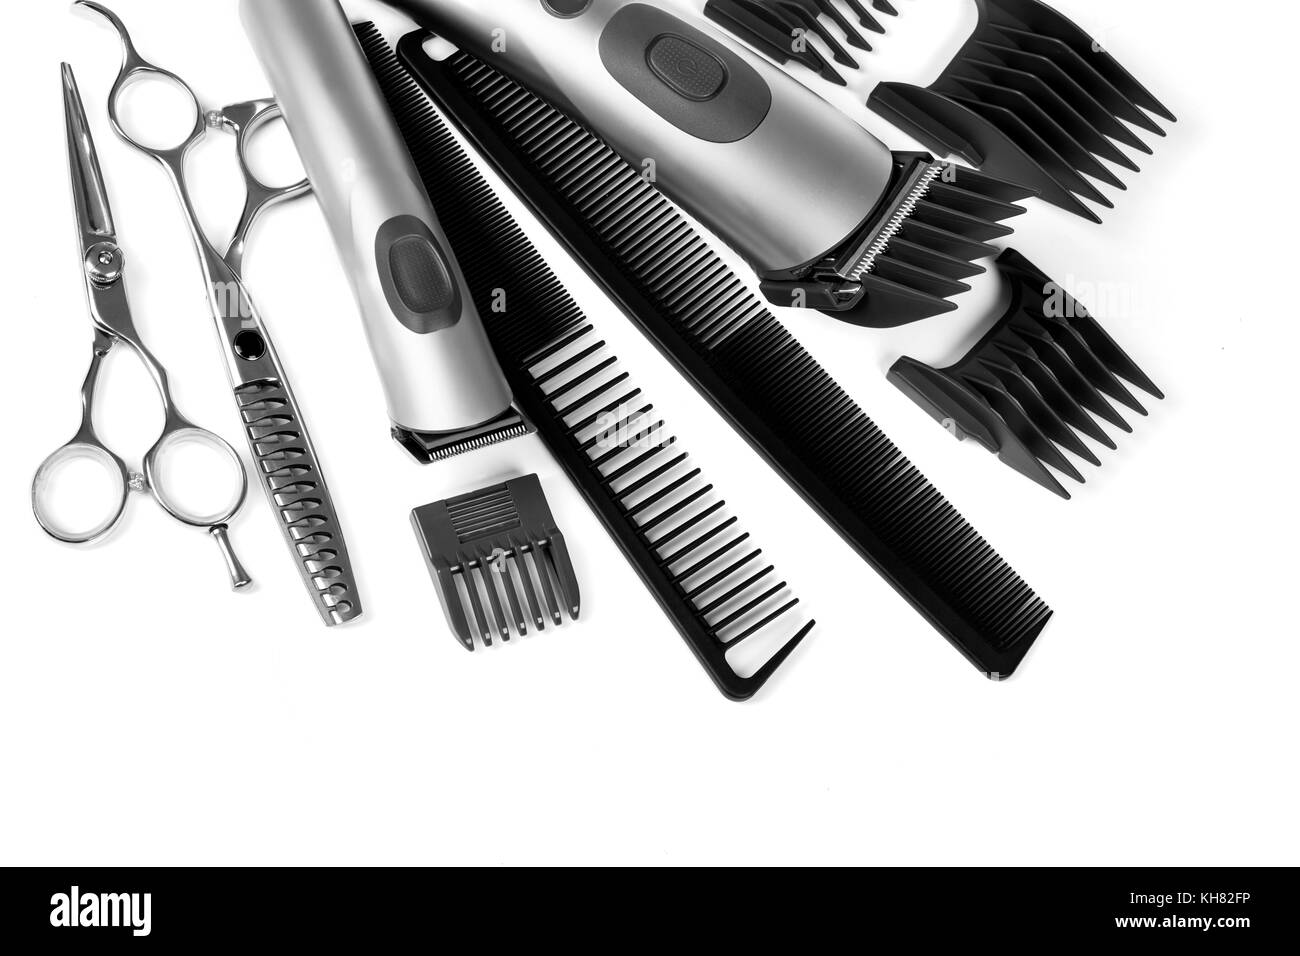 Friseur friseur Industrie. professionelle Werkzeuge. Kamm, Schere, Scherer  und Bartschneider auf weißem Hintergrund Stockfotografie - Alamy